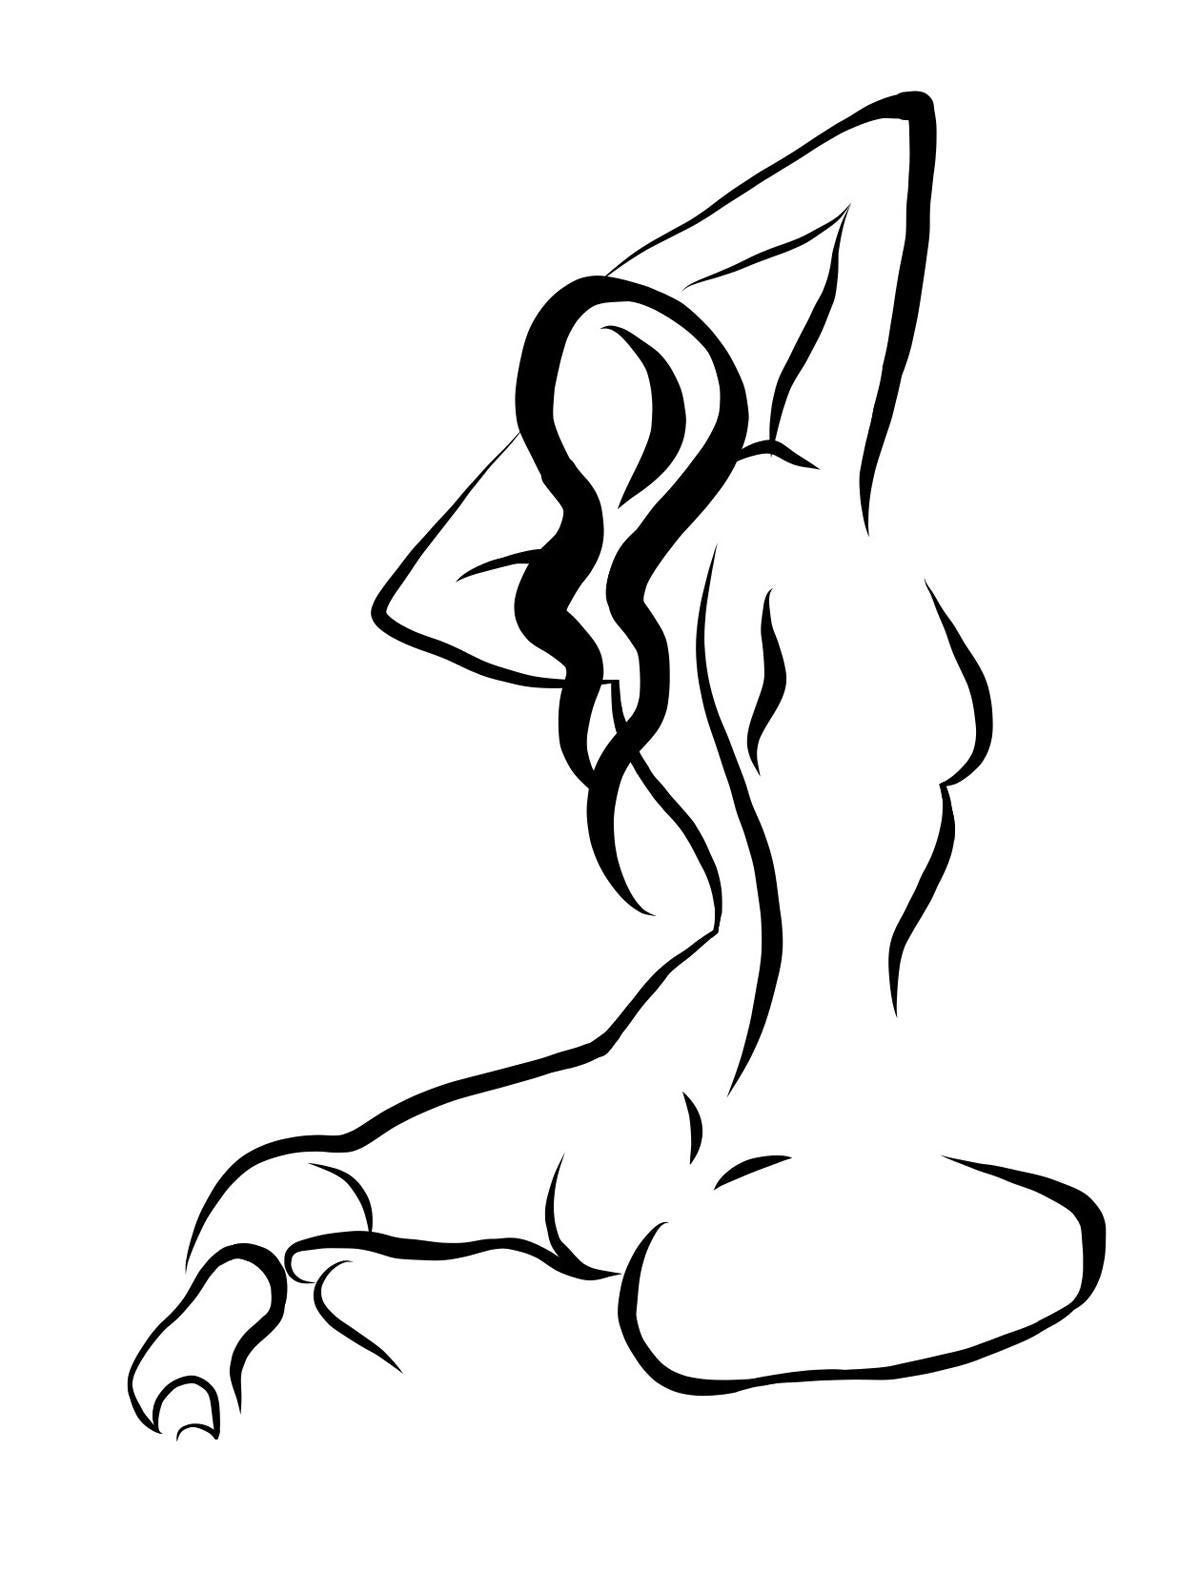 Michael Binkley Nude Print - Haiku #17, 1/50 - Digital Vector Drawing of Seated Female Nude from Behind